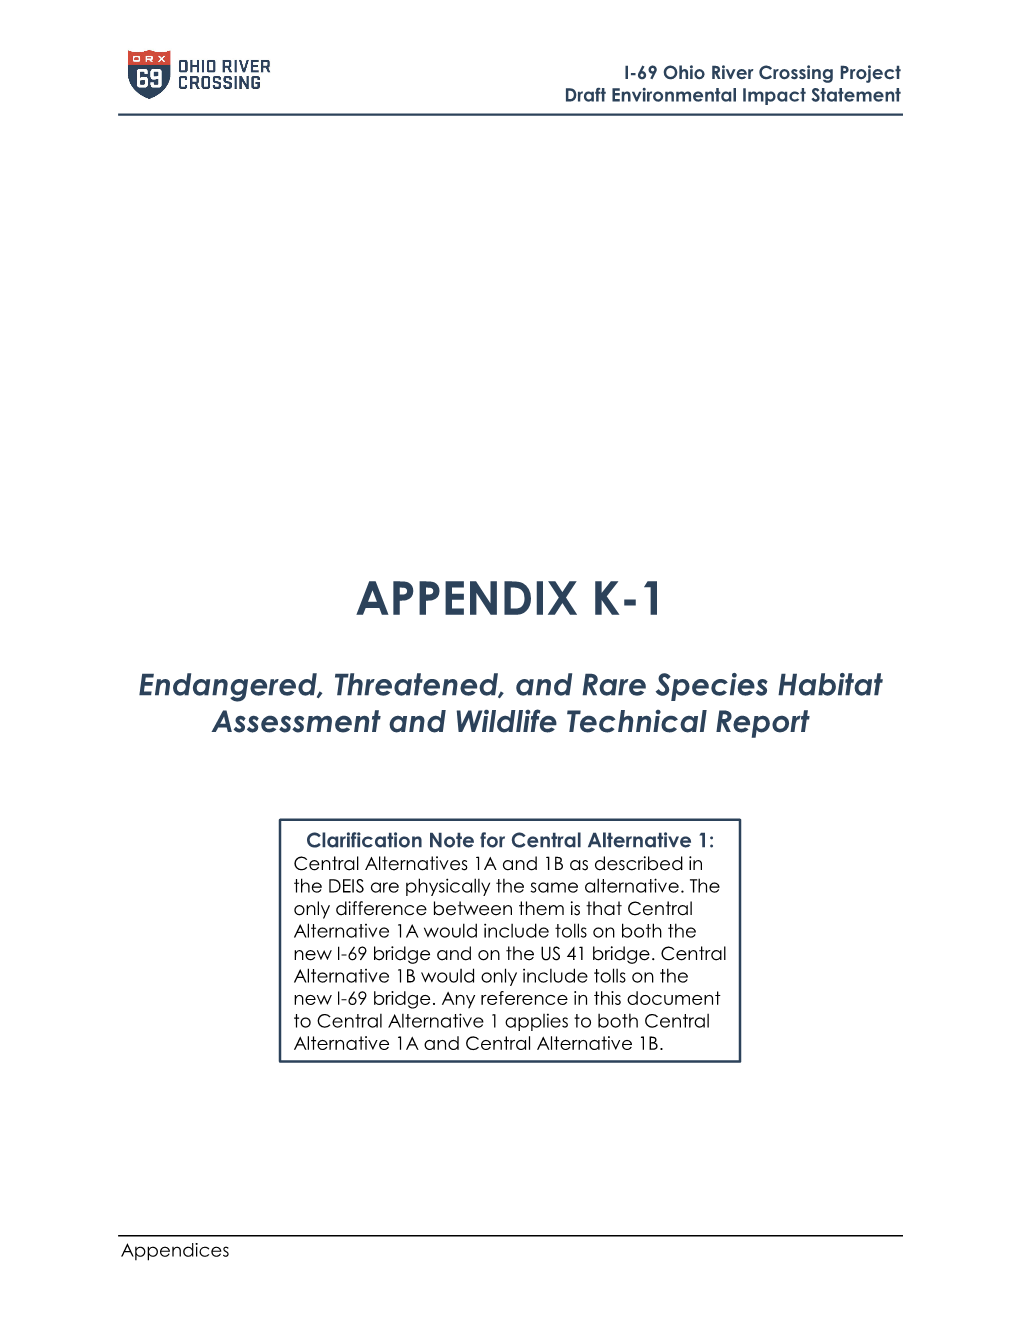 Appendix K-1 – Endangered Species Habitat and Wildlife Technical Report